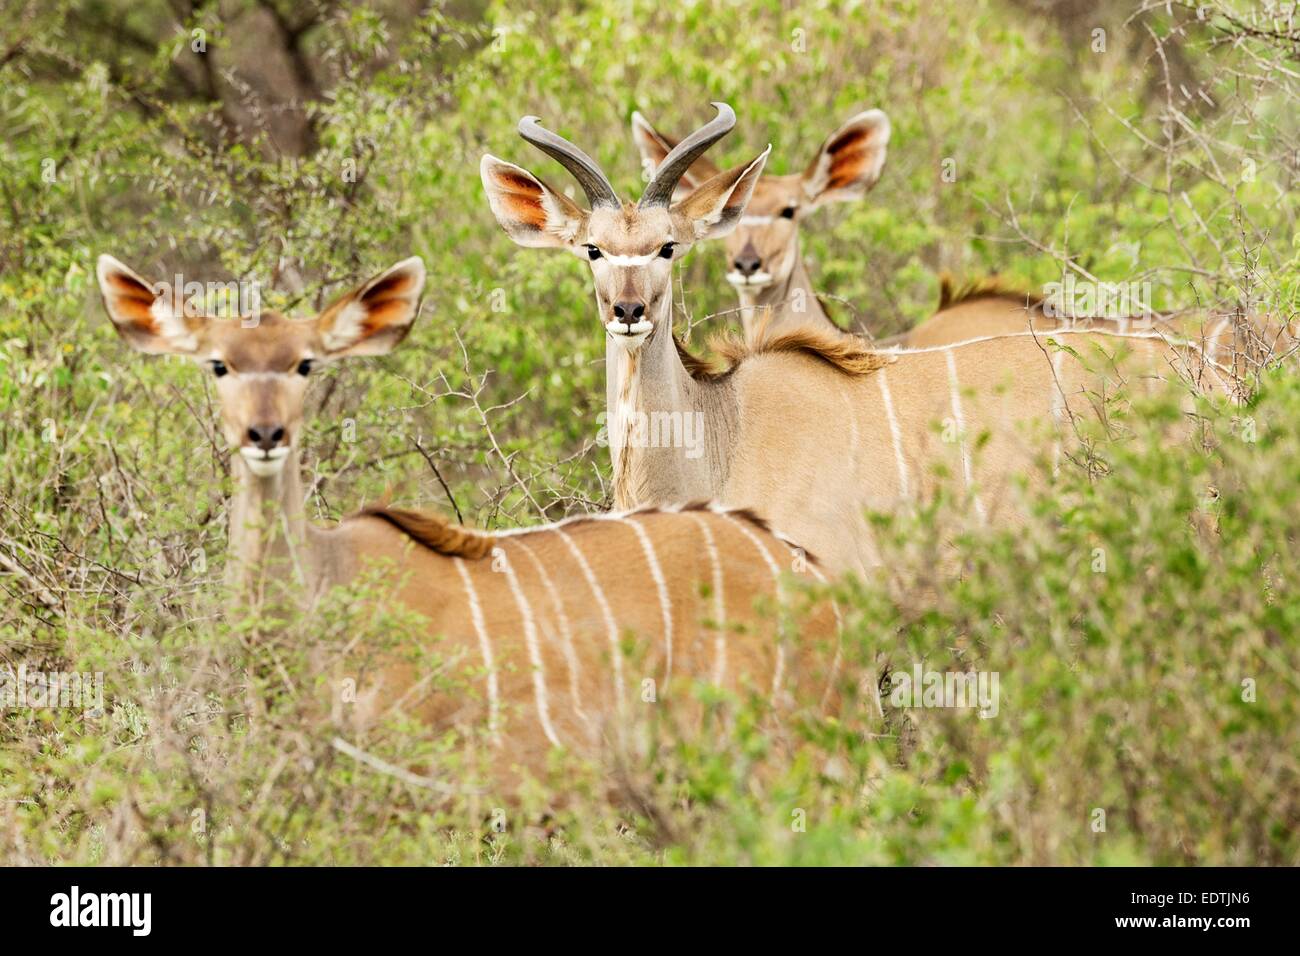 Un petit troupeau de Kudu en brousse regarder vers l'appareil photo en Namibie, l'Afrique. Photographié au cours d'une maison de vacances en voiture. Banque D'Images